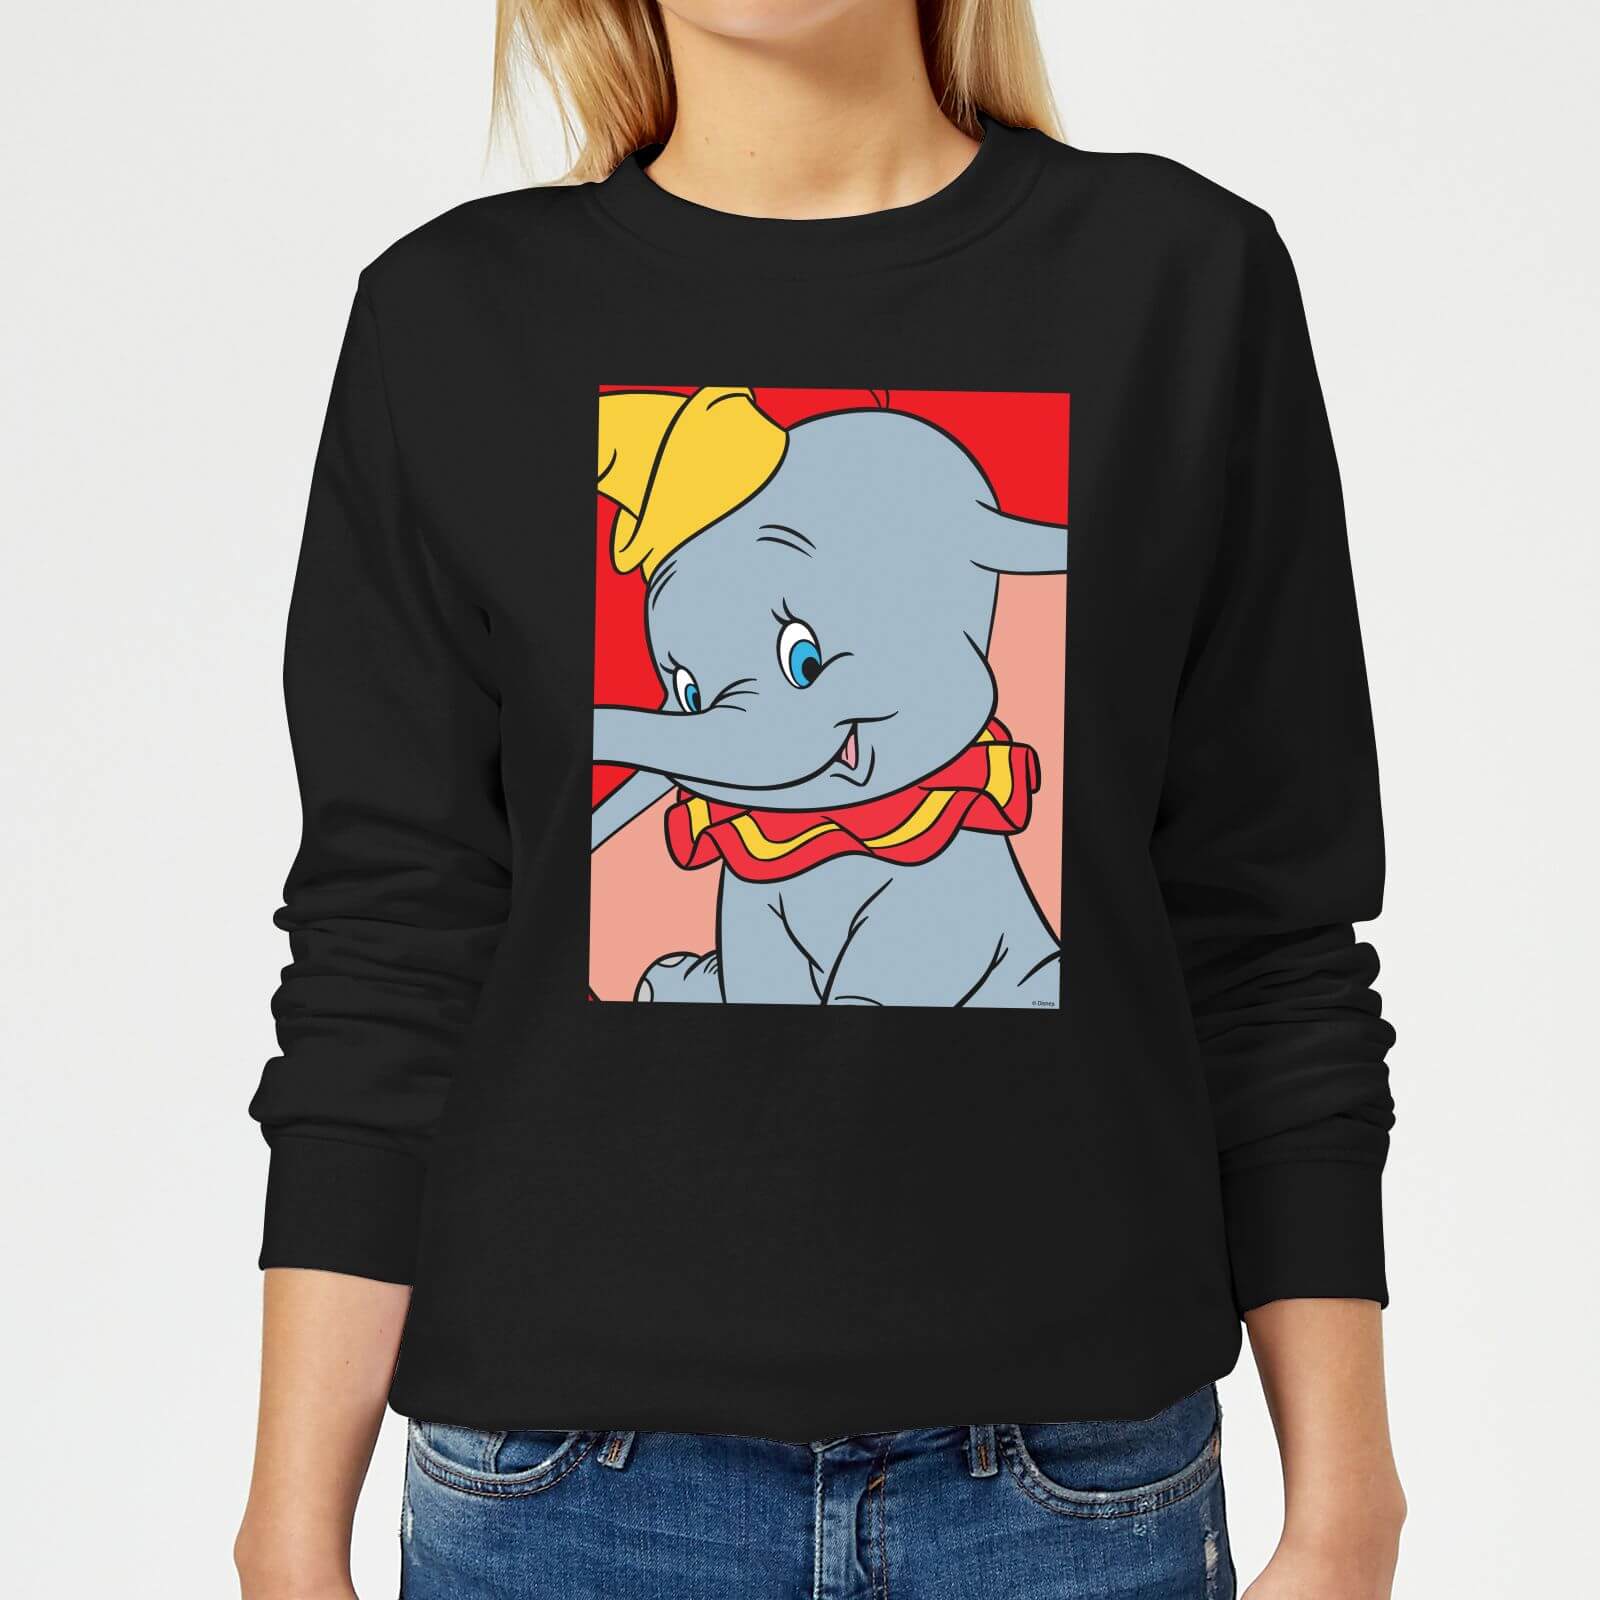 Dumbo Portrait Women's Sweatshirt - Black - S